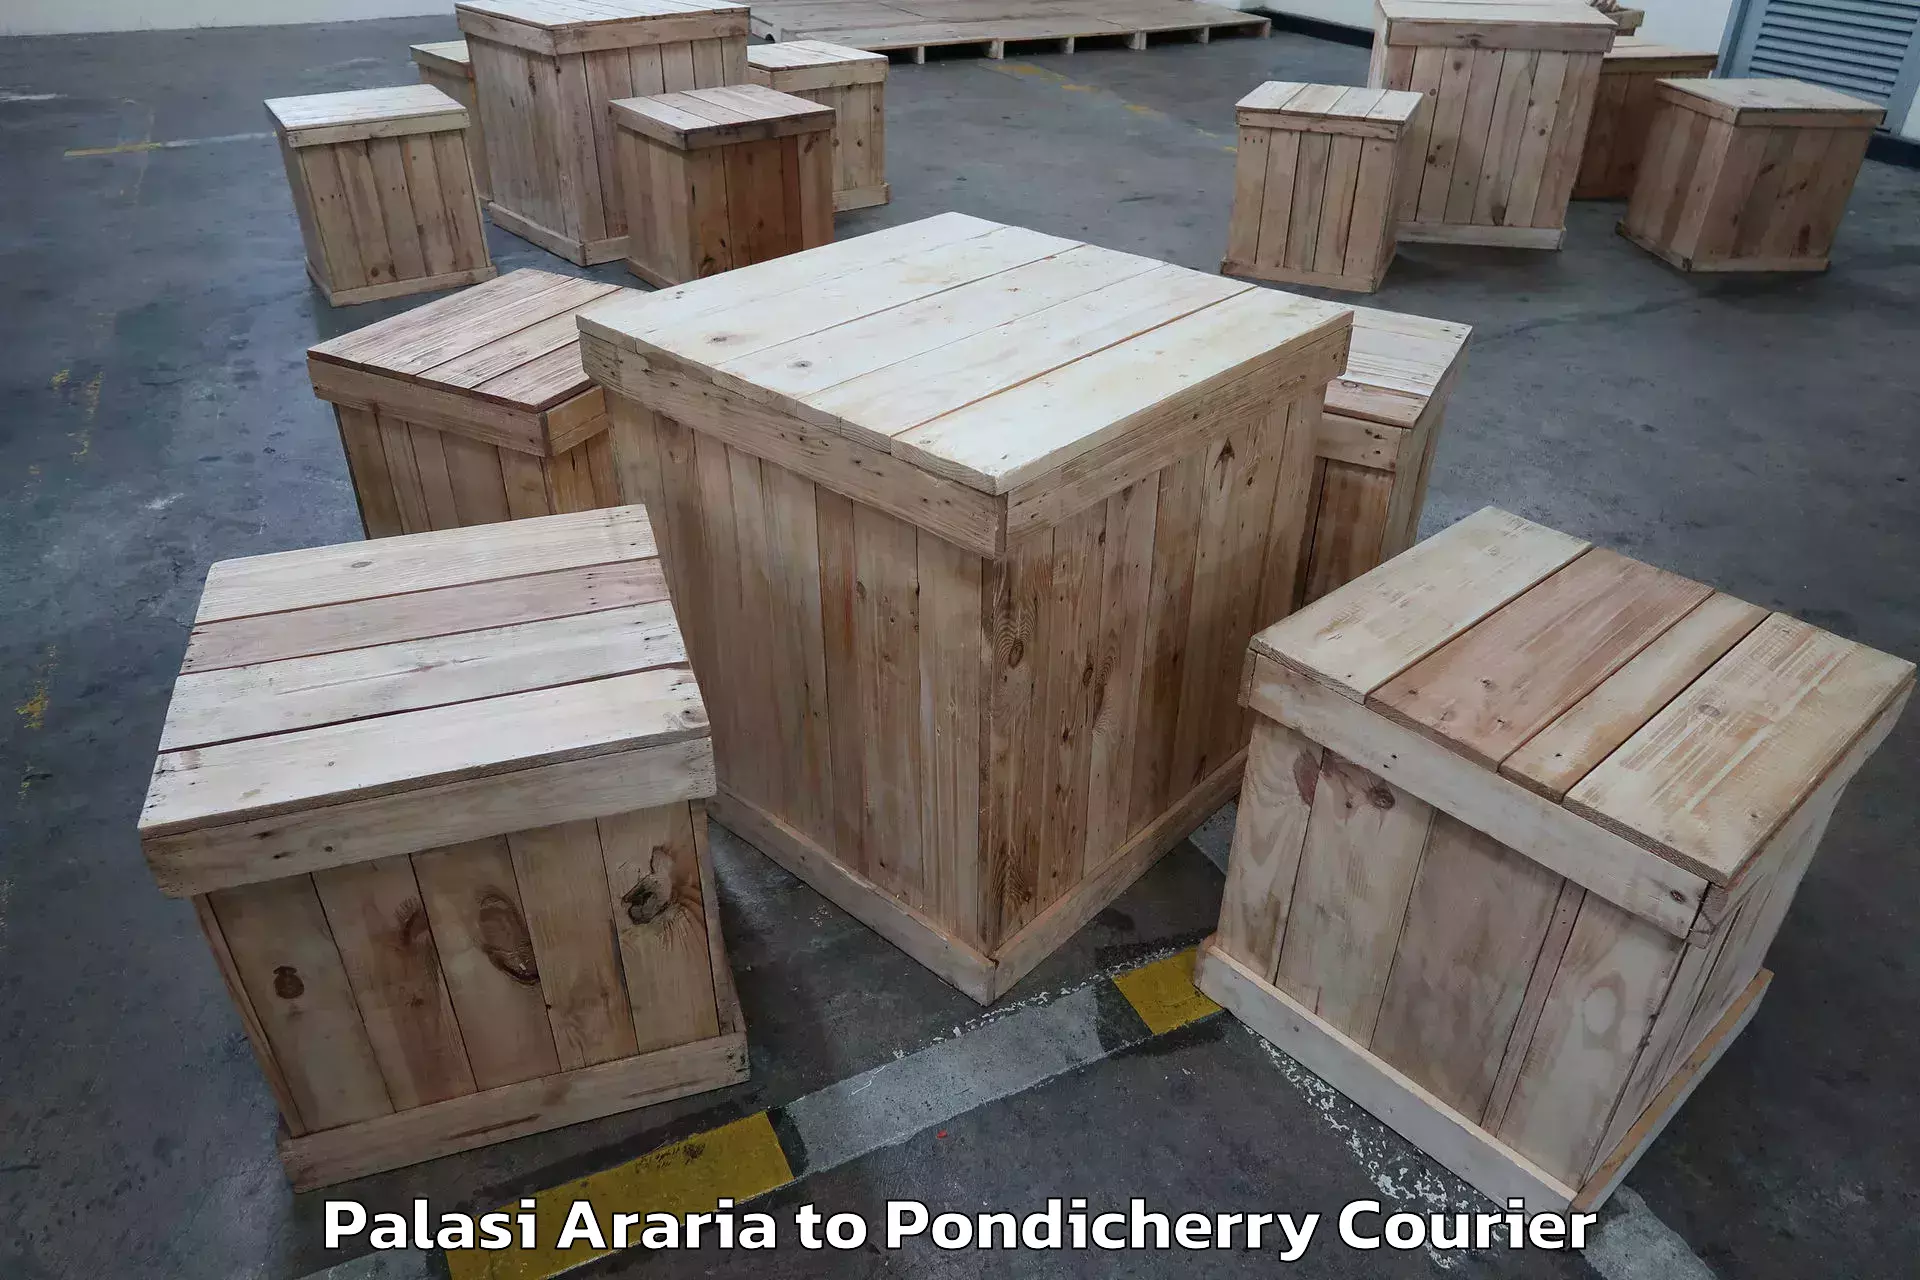 Professional furniture movers Palasi Araria to Karaikal